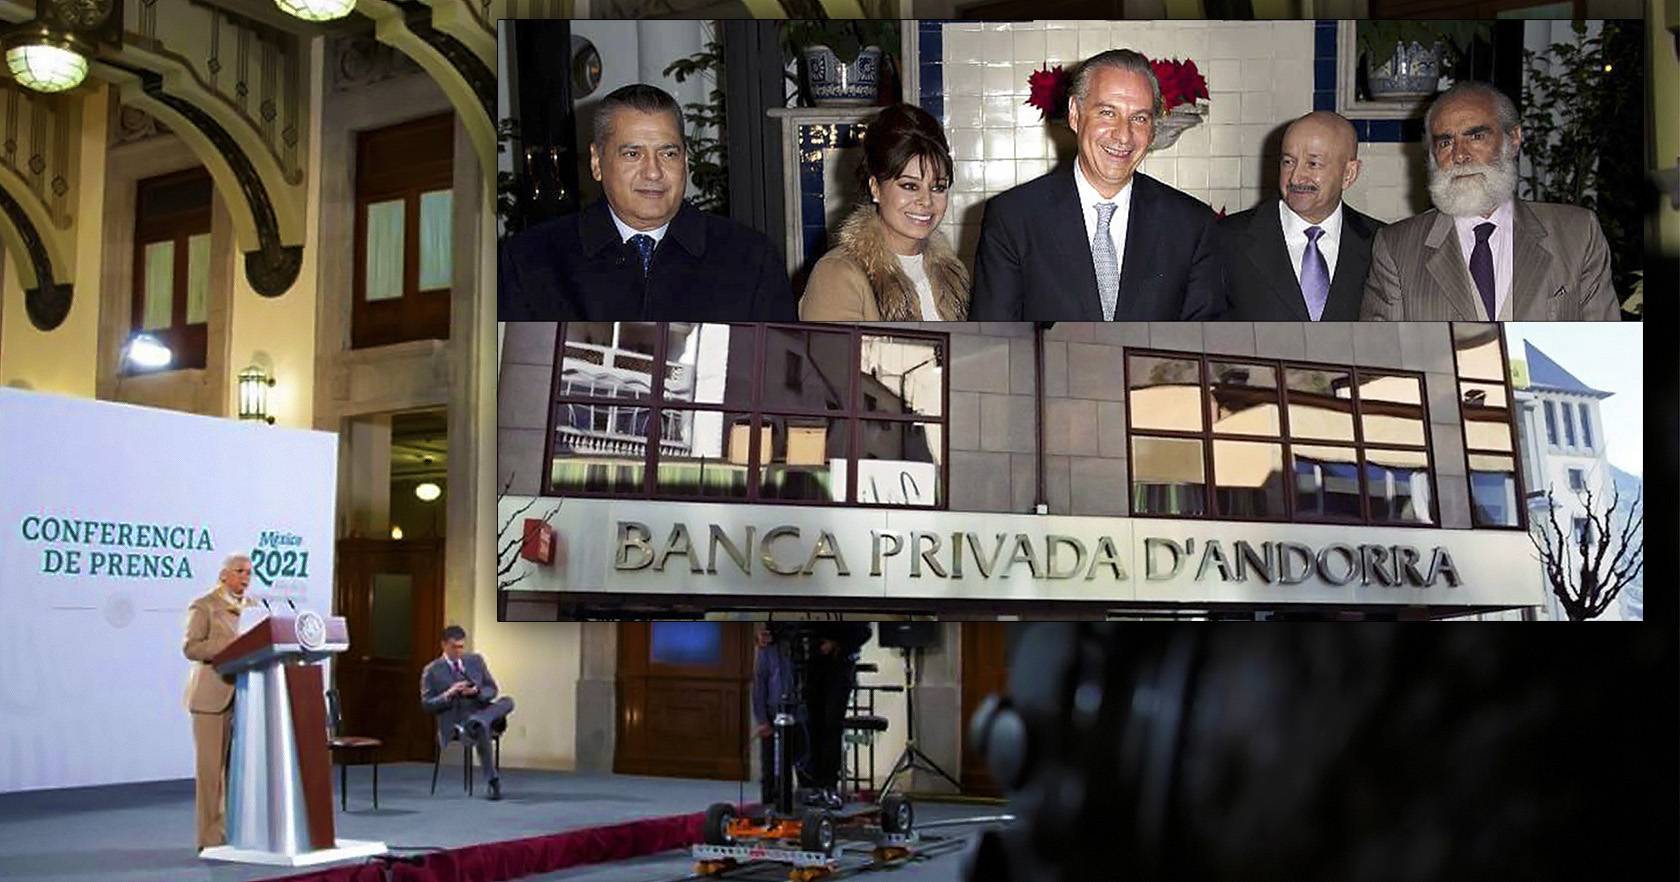 No sólo Andorra, dinero en otros paraísos fiscales debe investigarse- Olga Sánchez